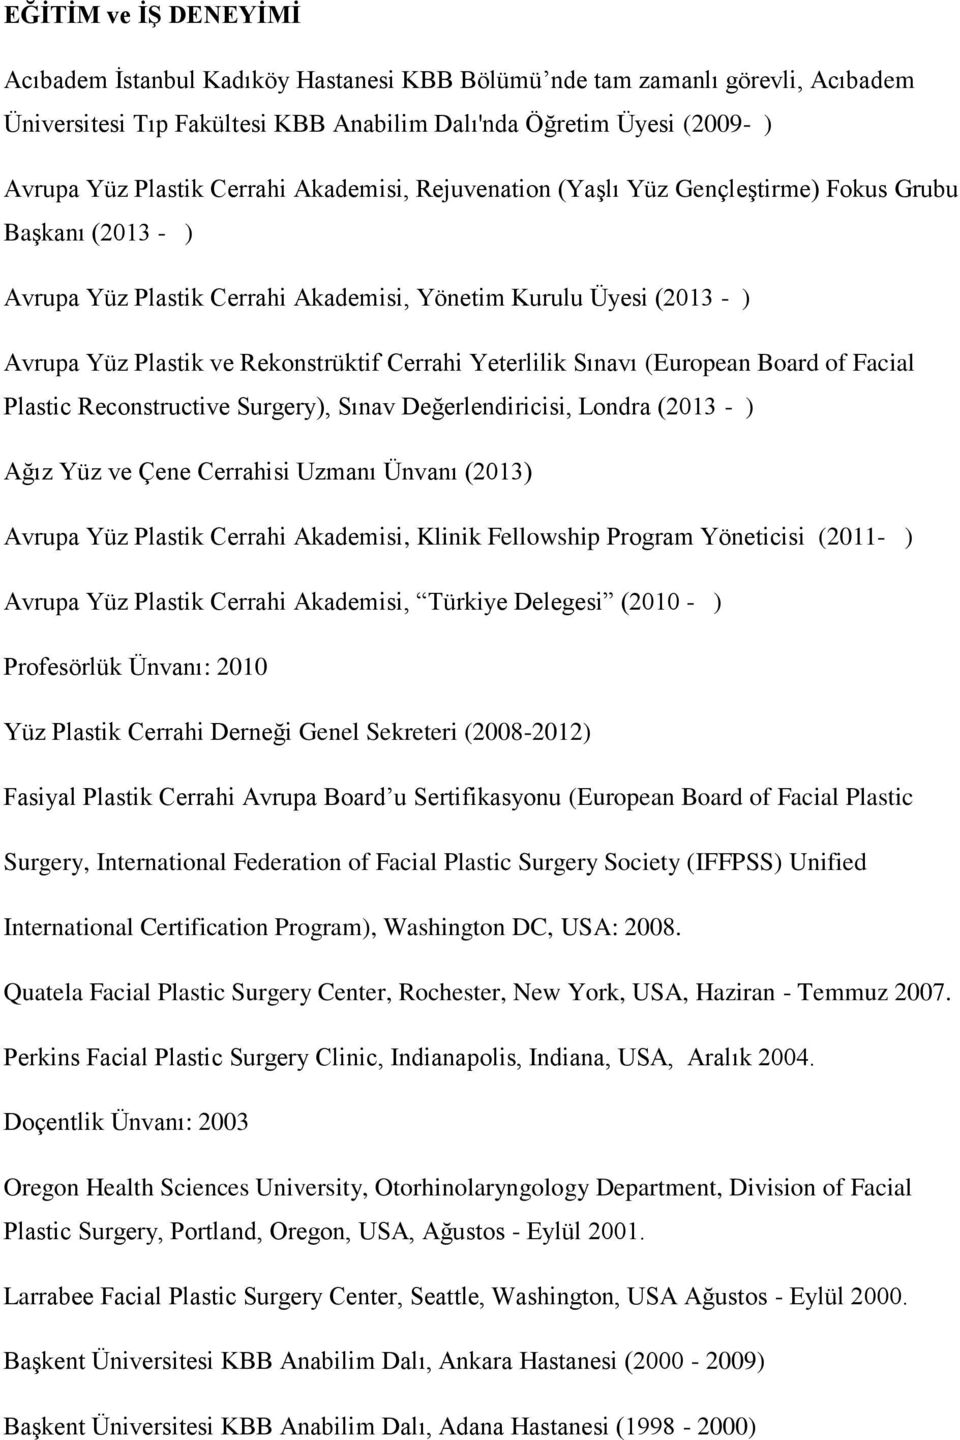 Yeterlilik Sınavı (European Board of Facial Plastic Reconstructive Surgery), Sınav Değerlendiricisi, Londra (2013 - ) Ağız Yüz ve Çene Cerrahisi Uzmanı Ünvanı (2013) Avrupa Yüz Plastik Cerrahi